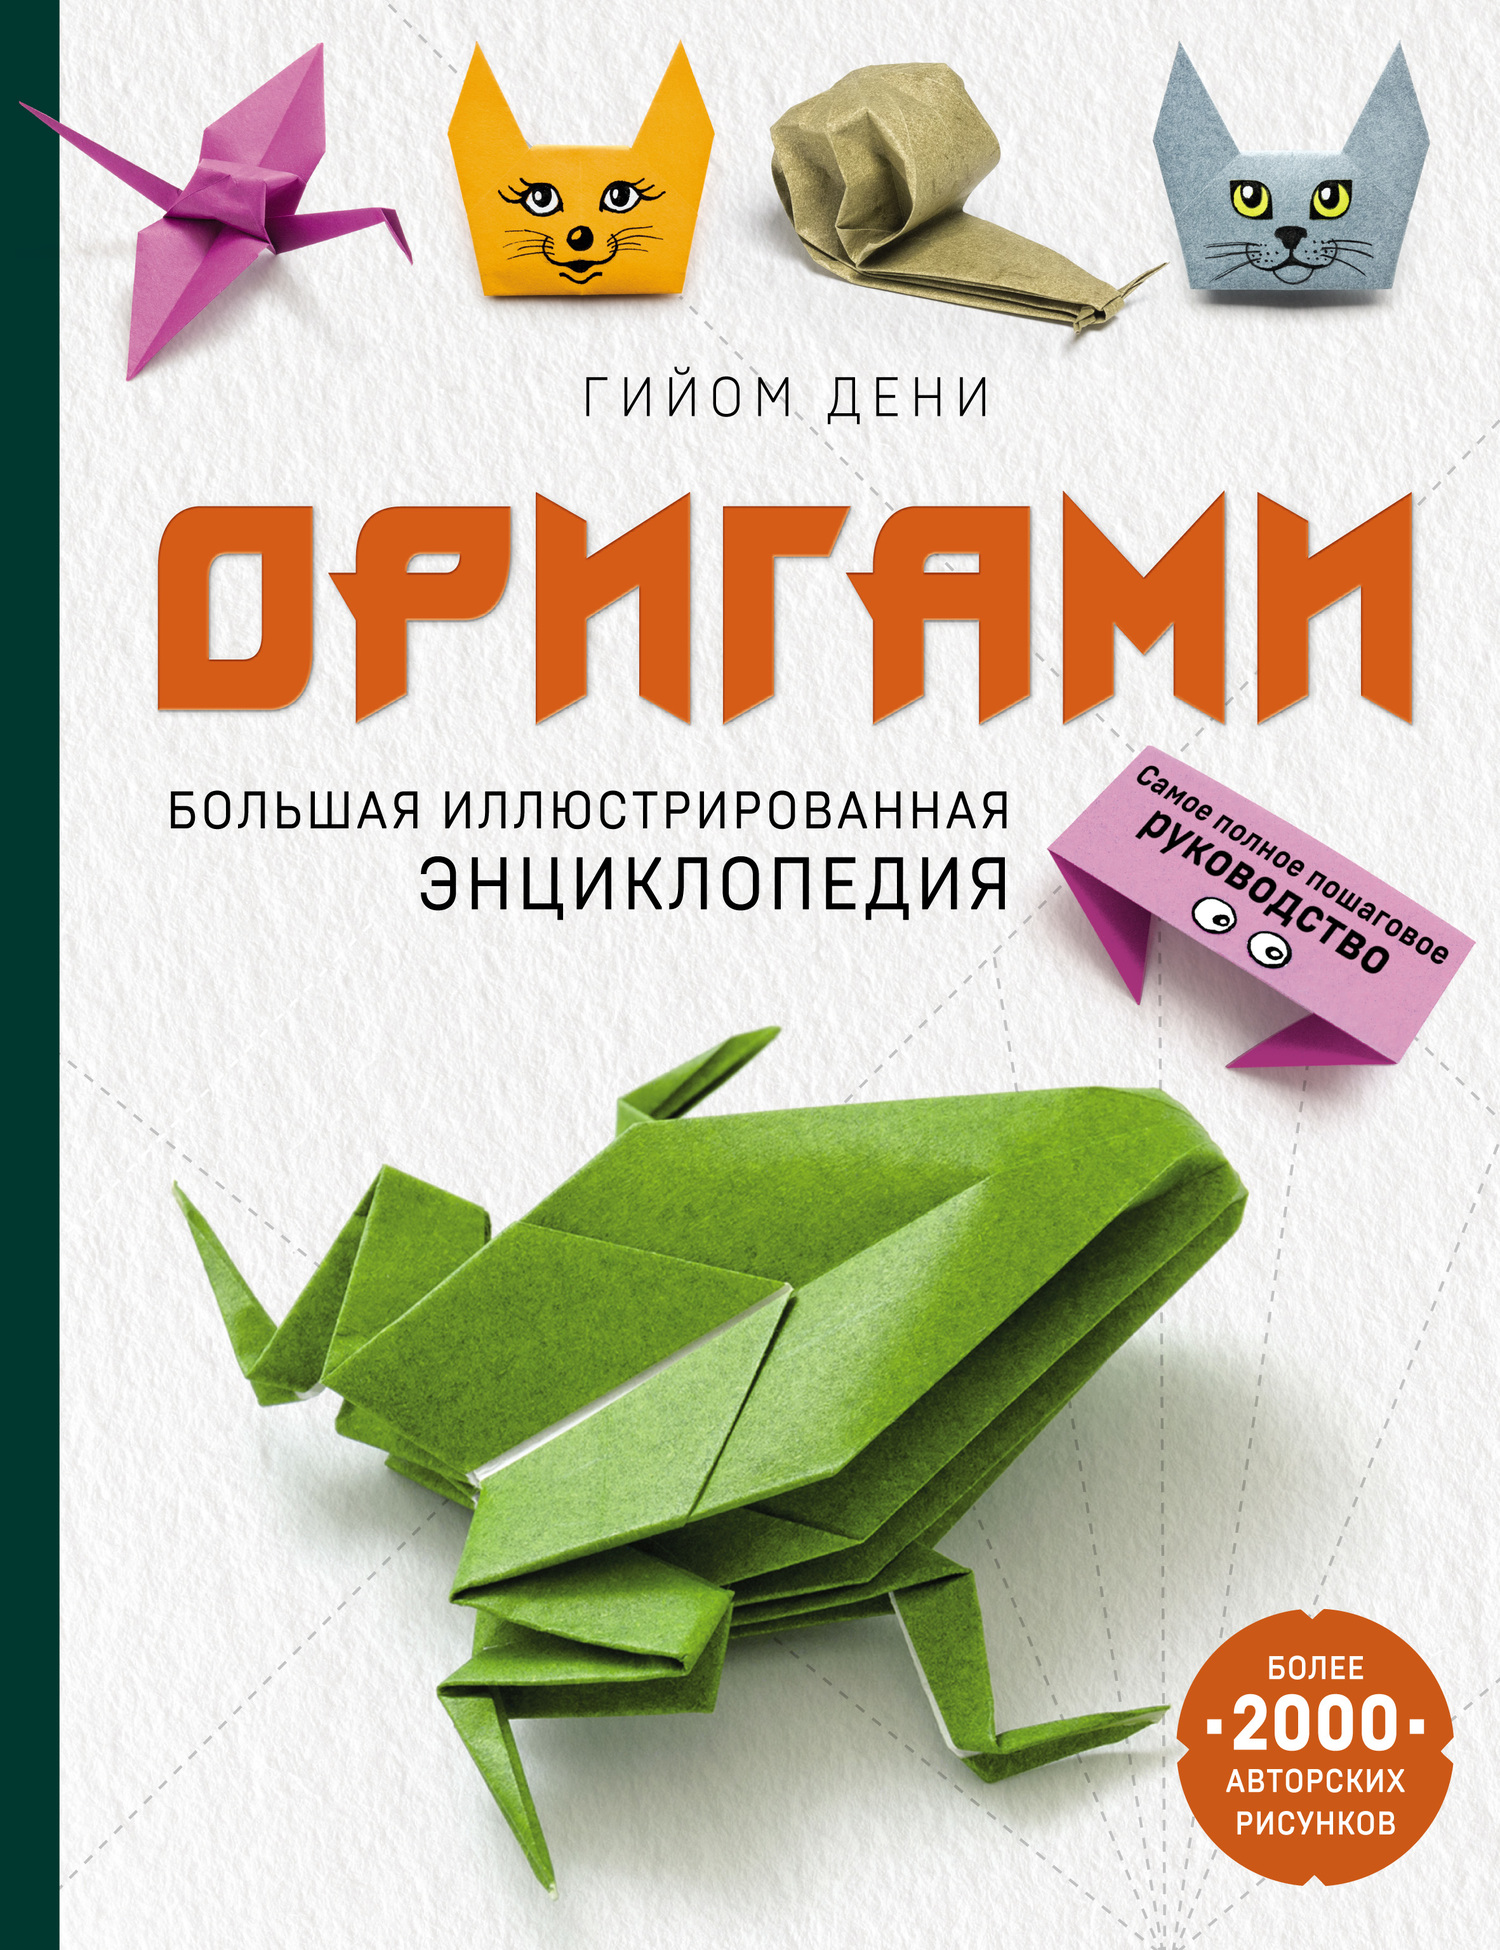 Оригами: искусство складывания бумаги и история Садако Сасаки | Азиатский экспресс | Дзен